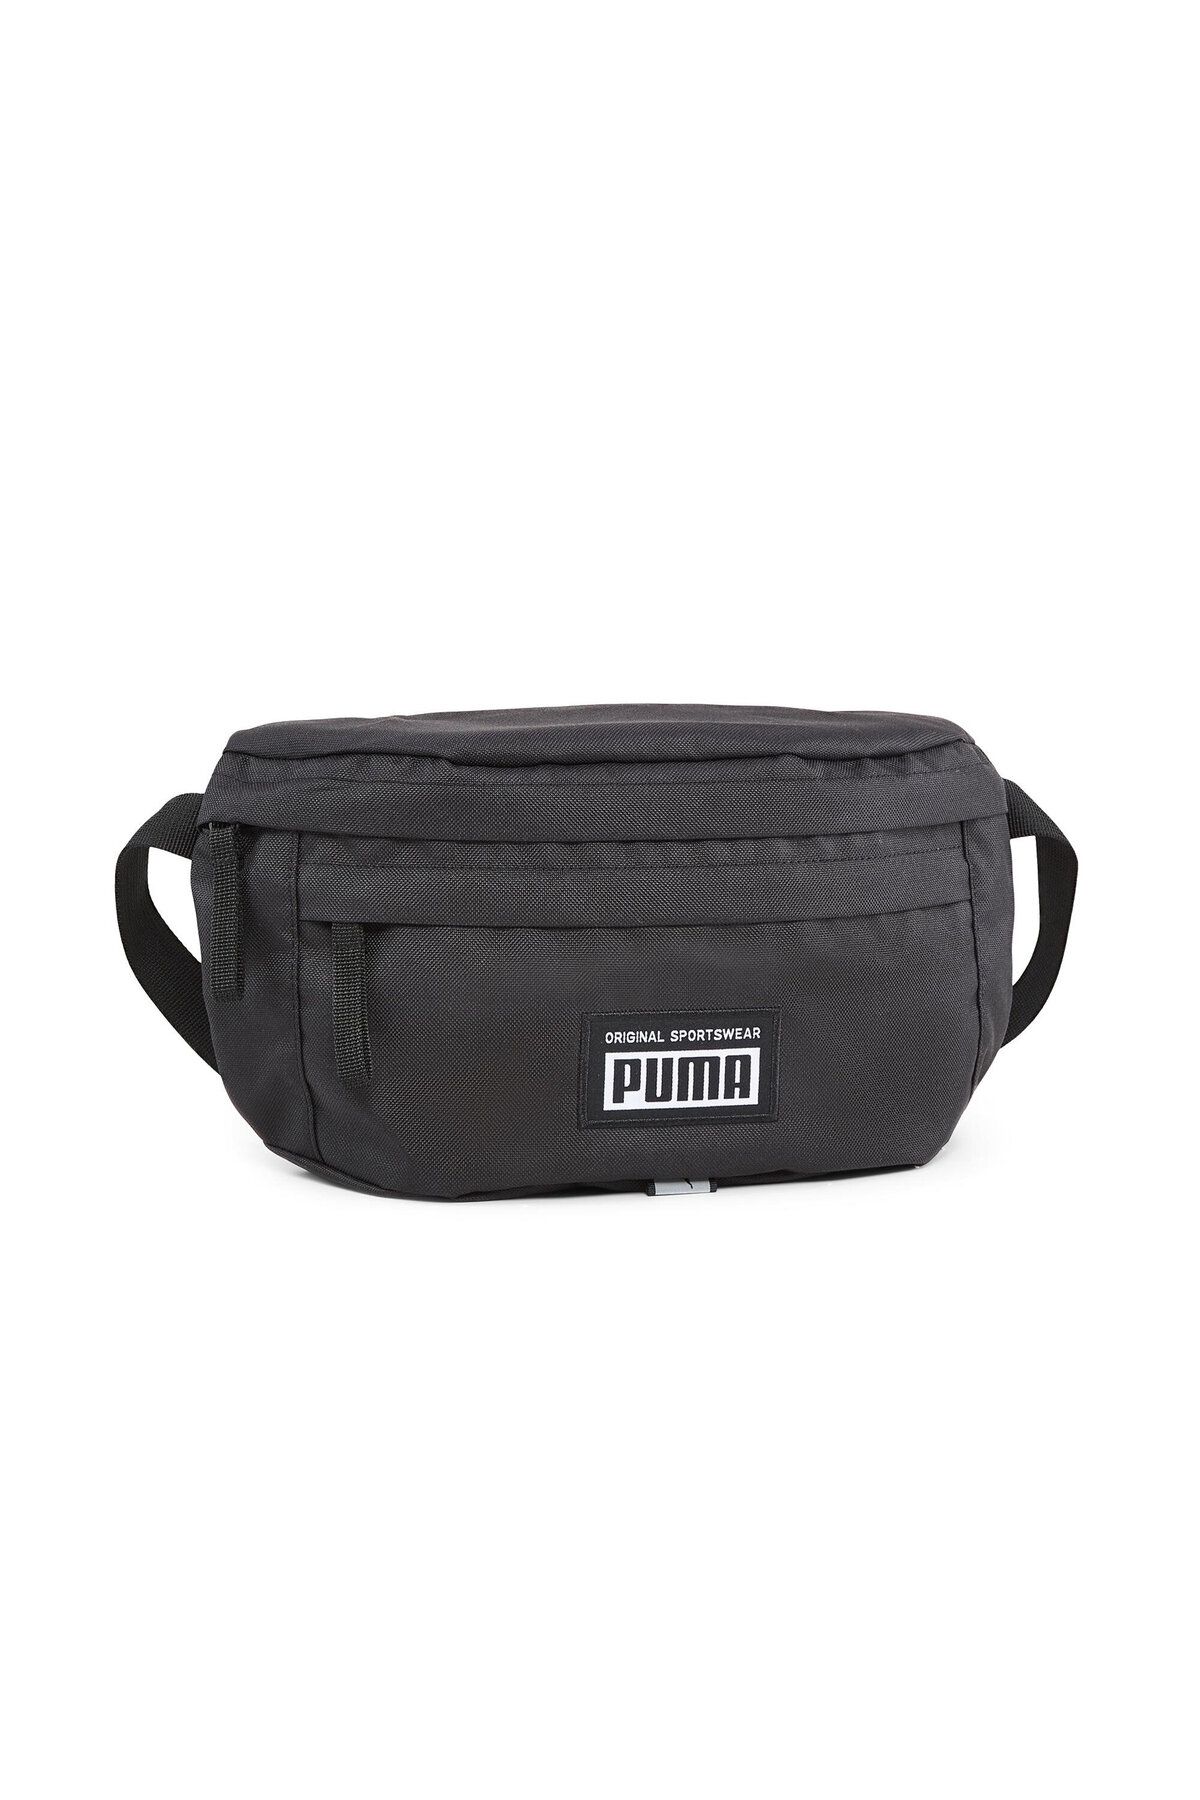 Puma Academy Waist Bag Bel Çantası 7993701 Siyah